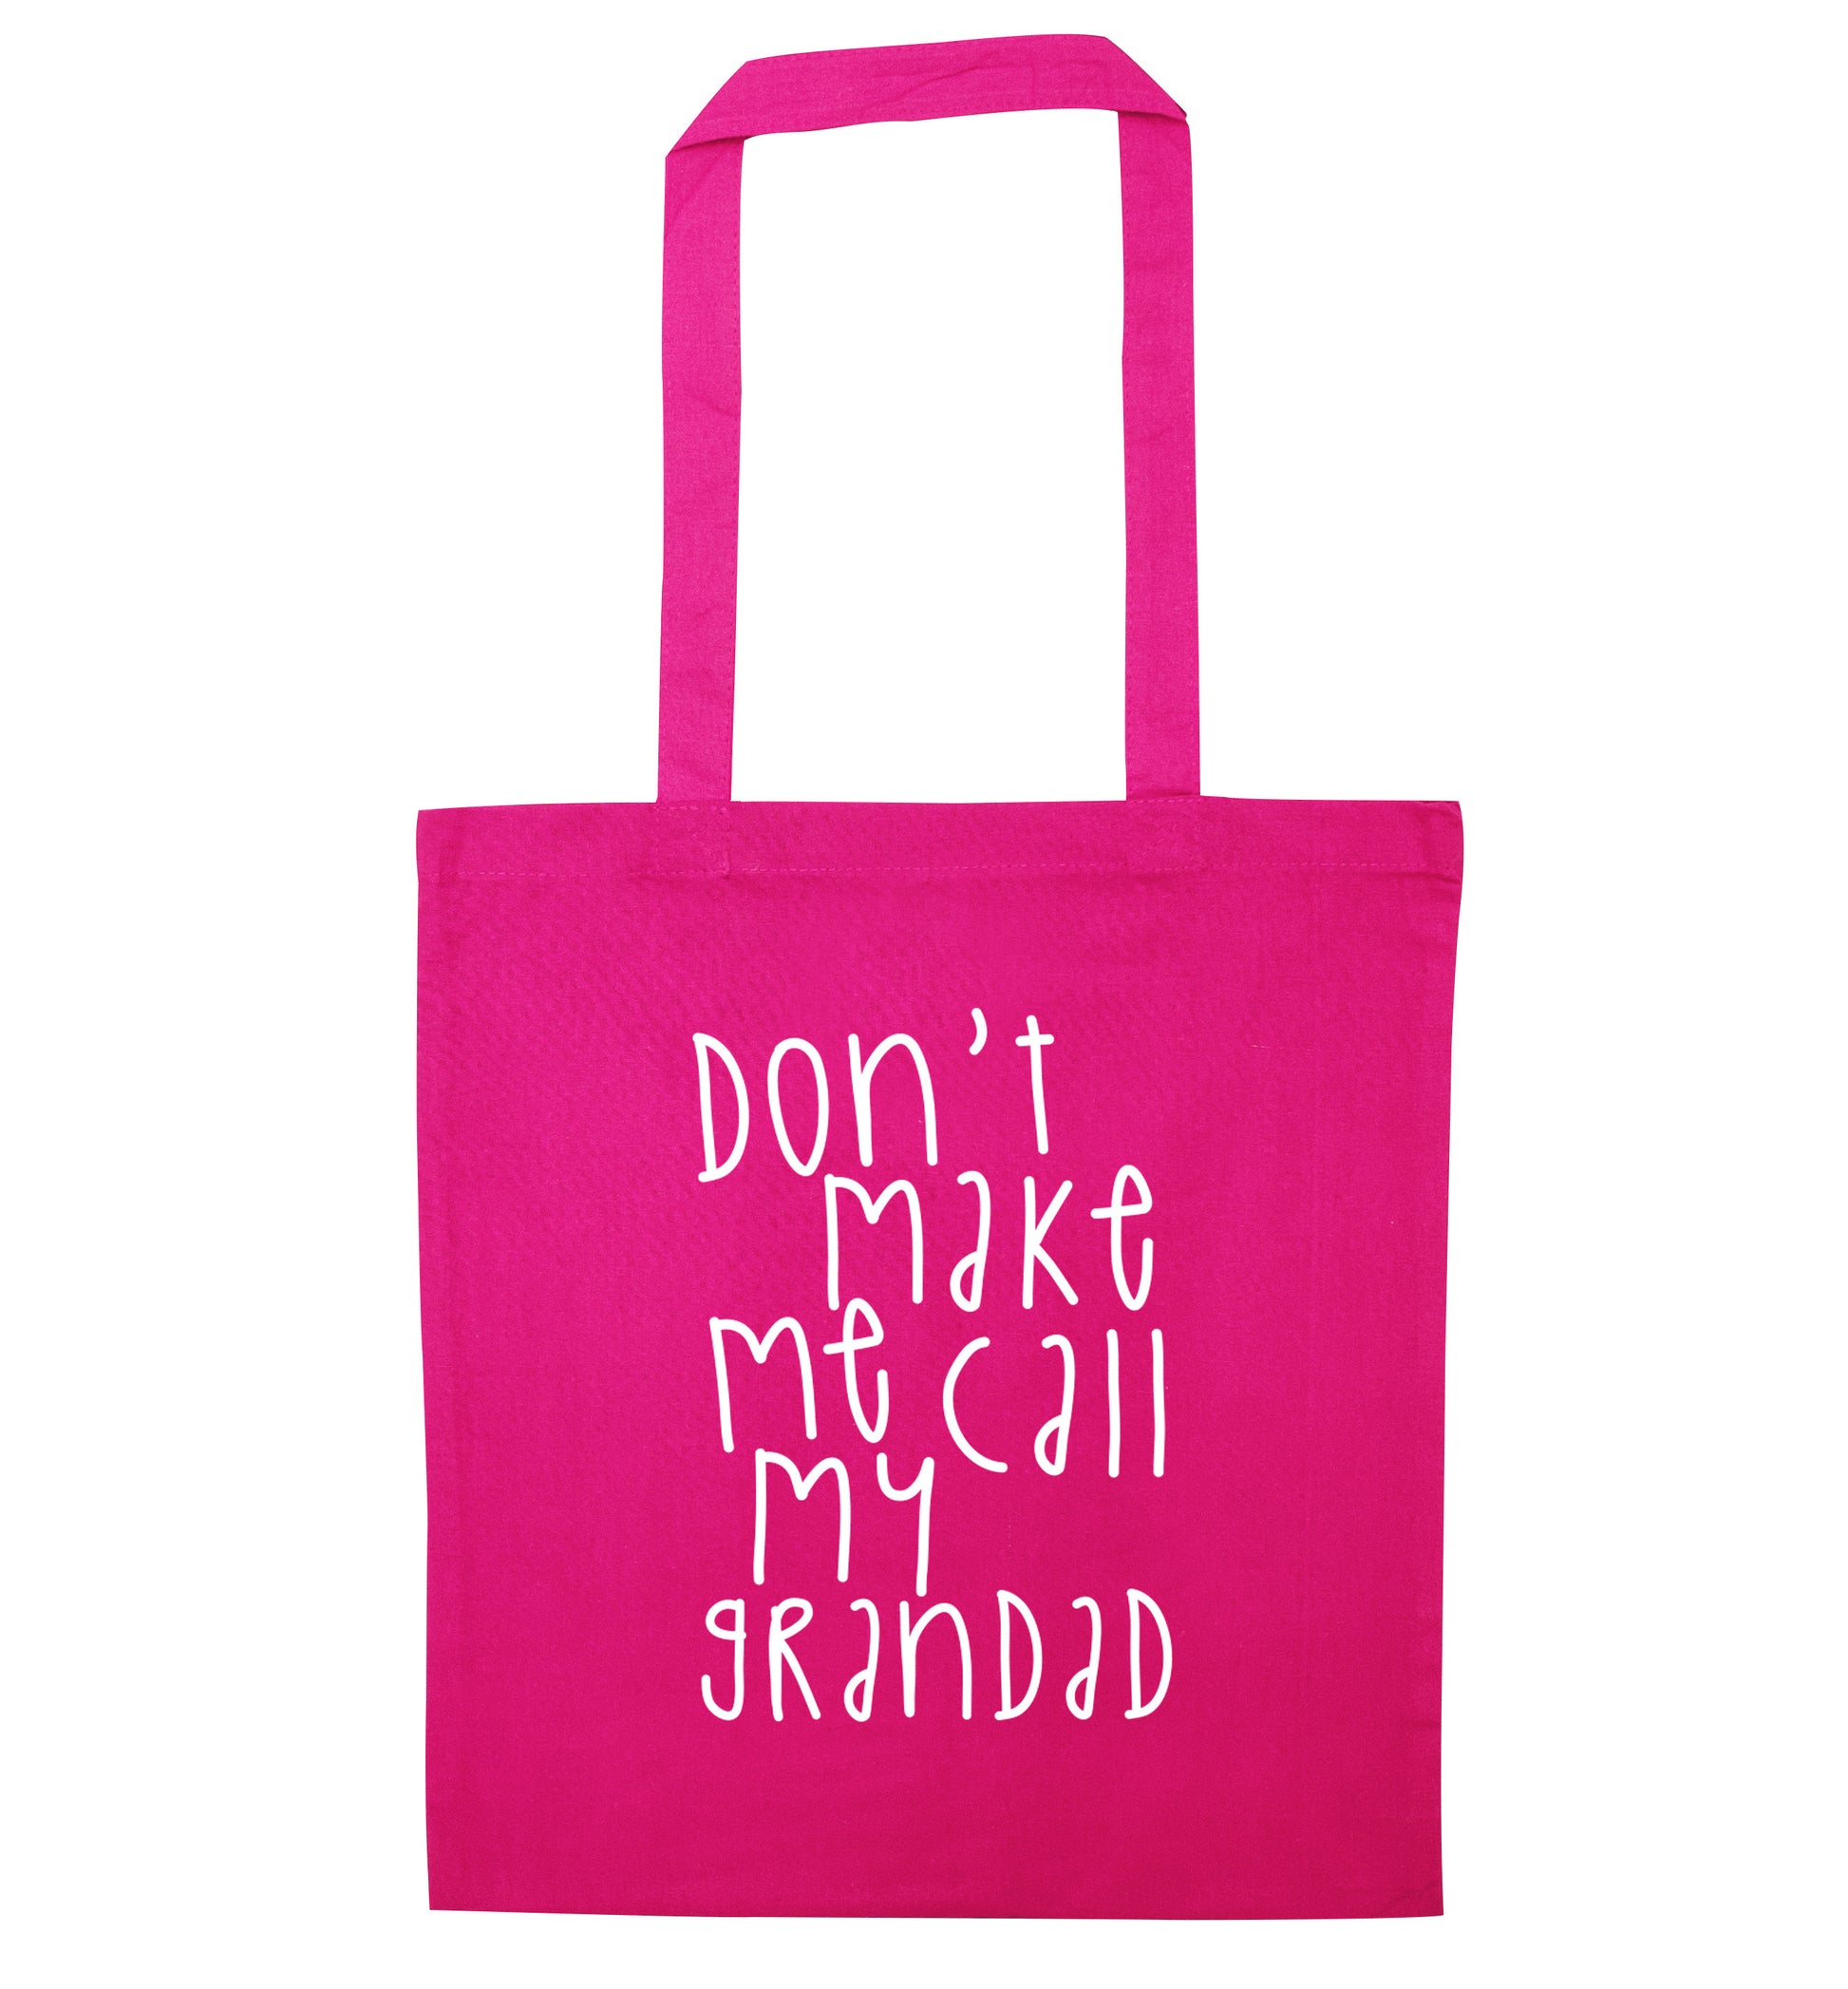 Don't make me call my grandad pink tote bag